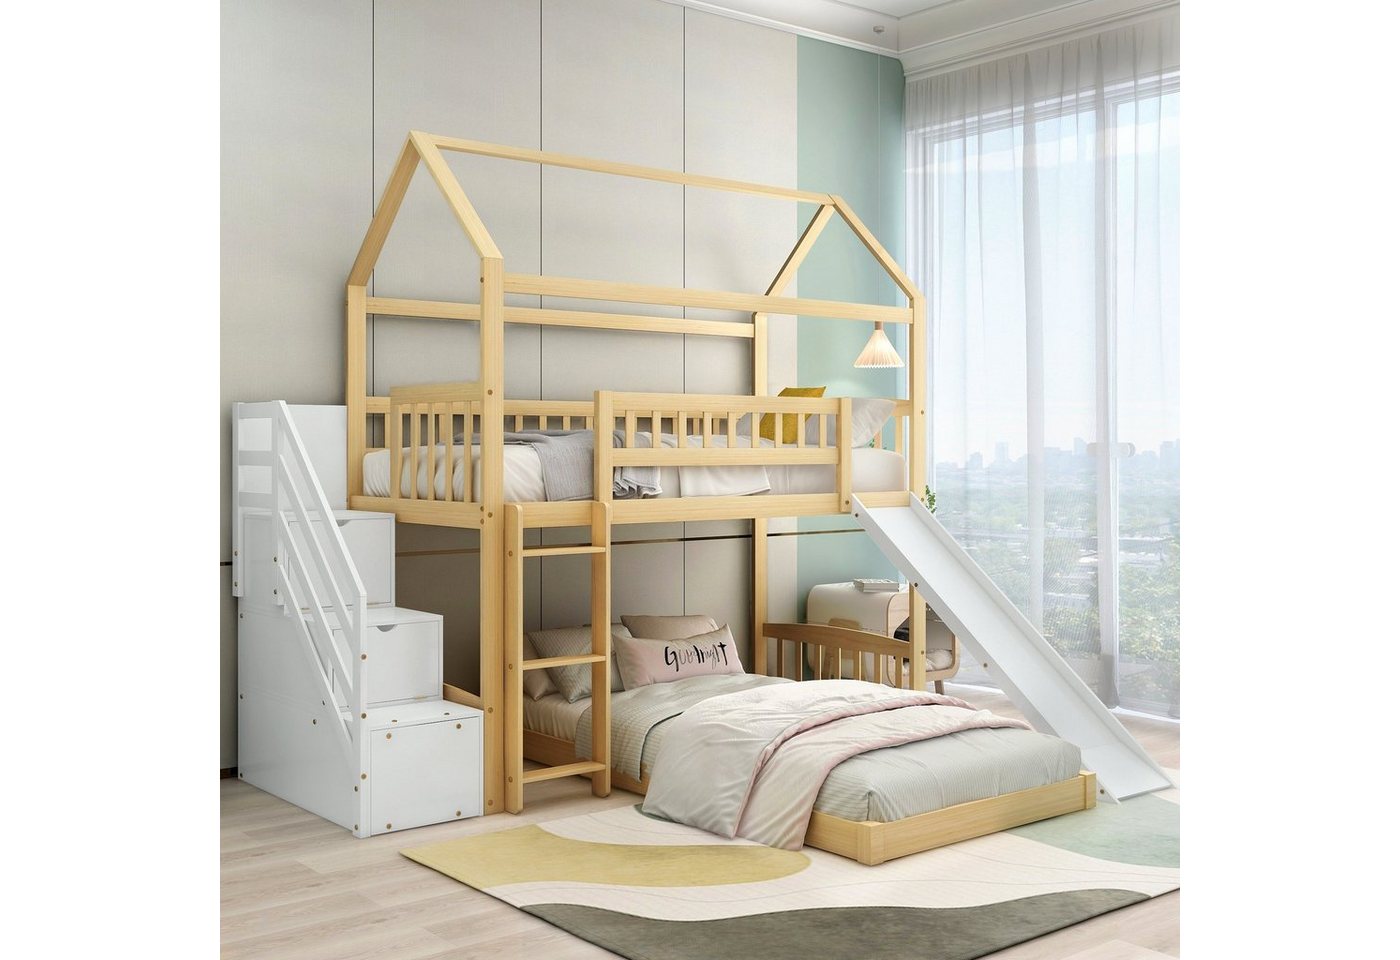 Flieks Etagenbett, Kinderbett mit Treppe Stauraum Rutsche Kieferholz 90x200cm von Flieks